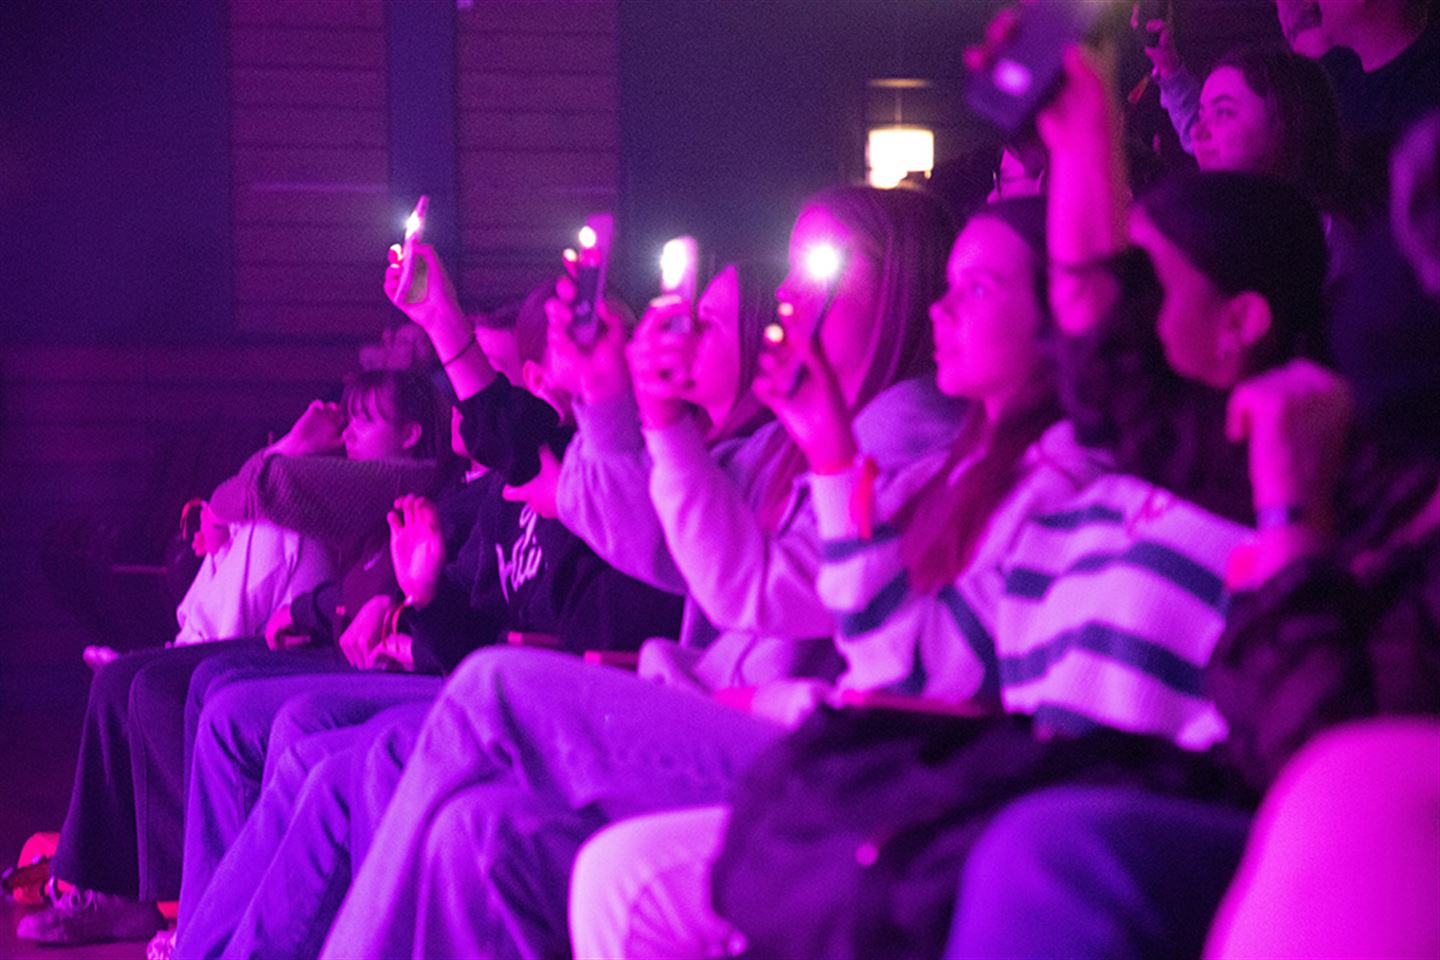 Ungdomar som held opp telefonane sine og lyser på konsert. Det er lilla lysskjær i bildet.